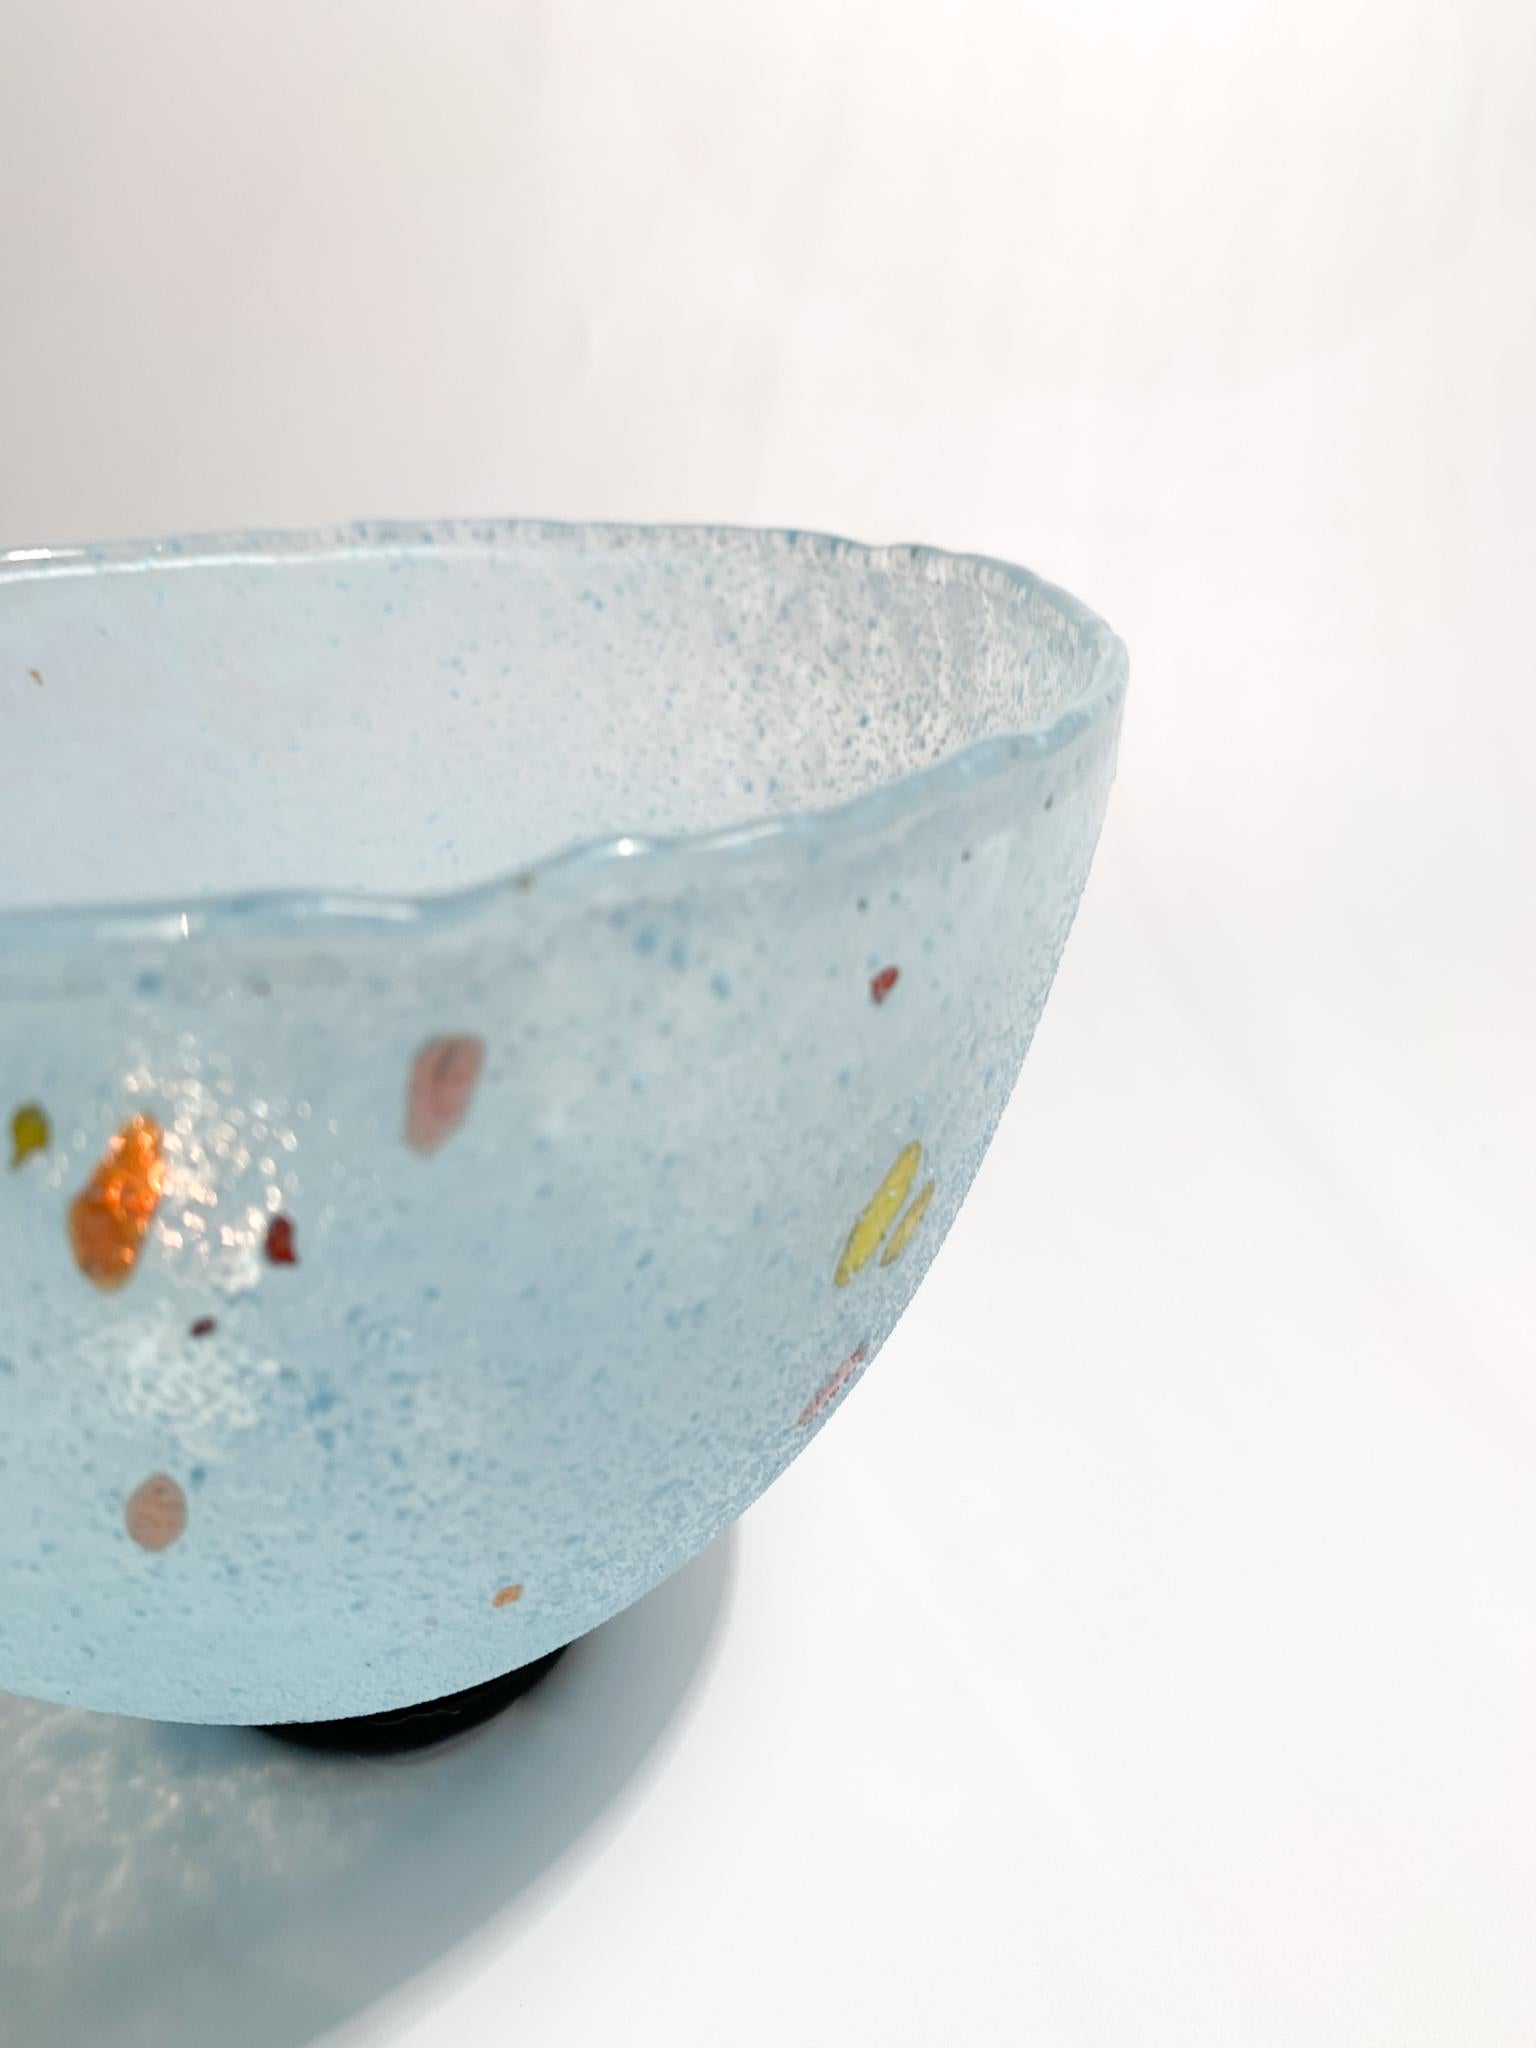 Mid-Century Modern Light Blue Glass Bowl by Bertil Vallien for Kosta Boda form the 90s